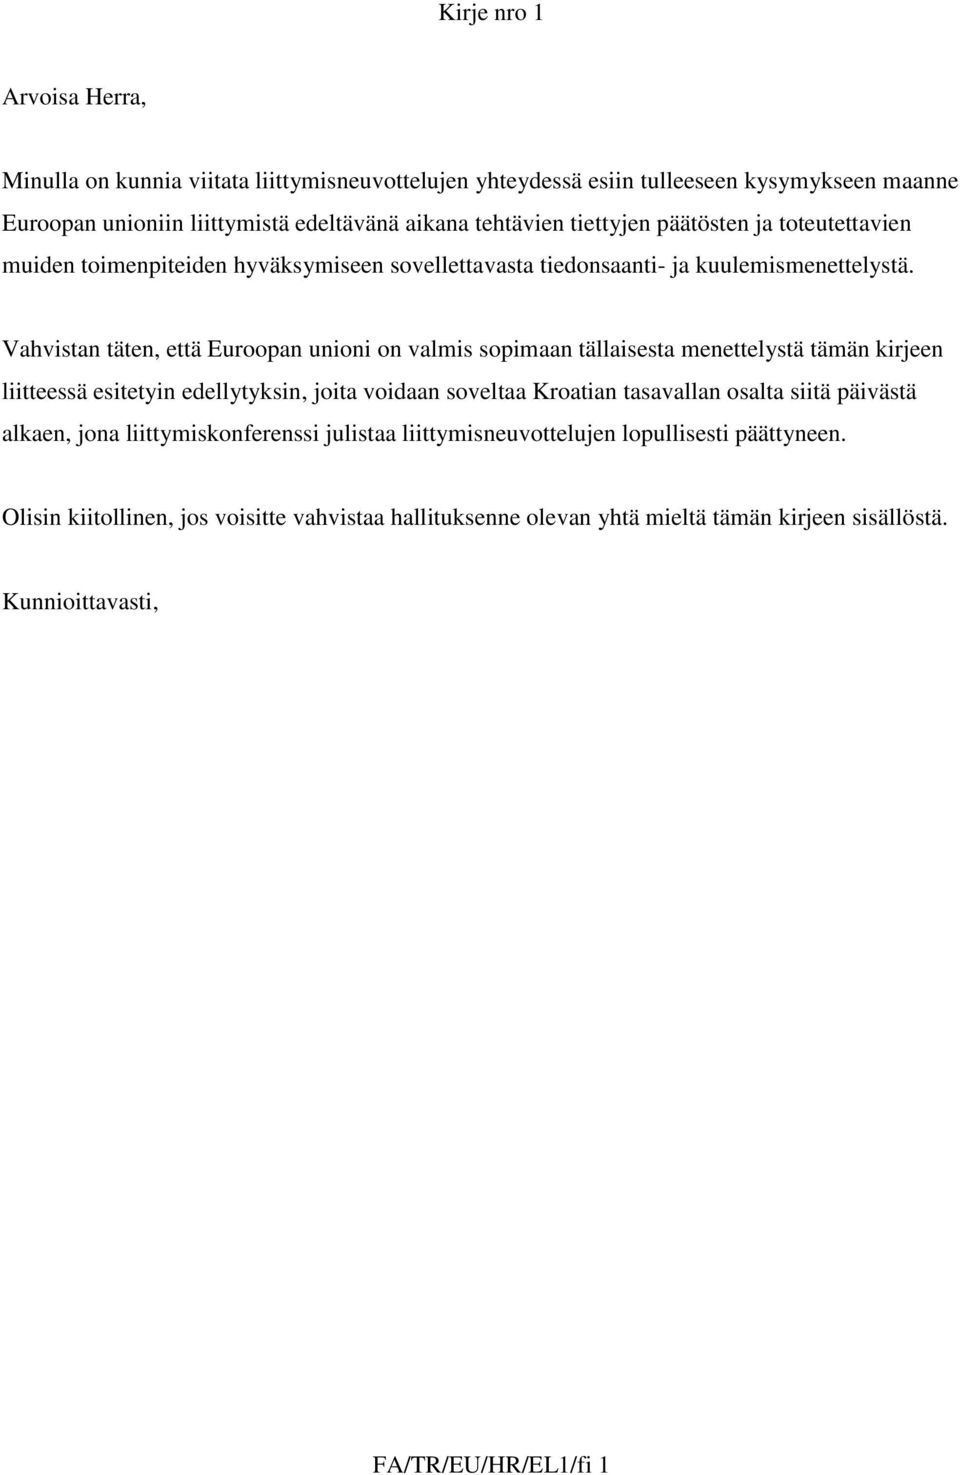 Vahvistan täten, että Euroopan unioni on valmis sopimaan tällaisesta menettelystä tämän kirjeen liitteessä esitetyin edellytyksin, joita voidaan soveltaa Kroatian tasavallan osalta